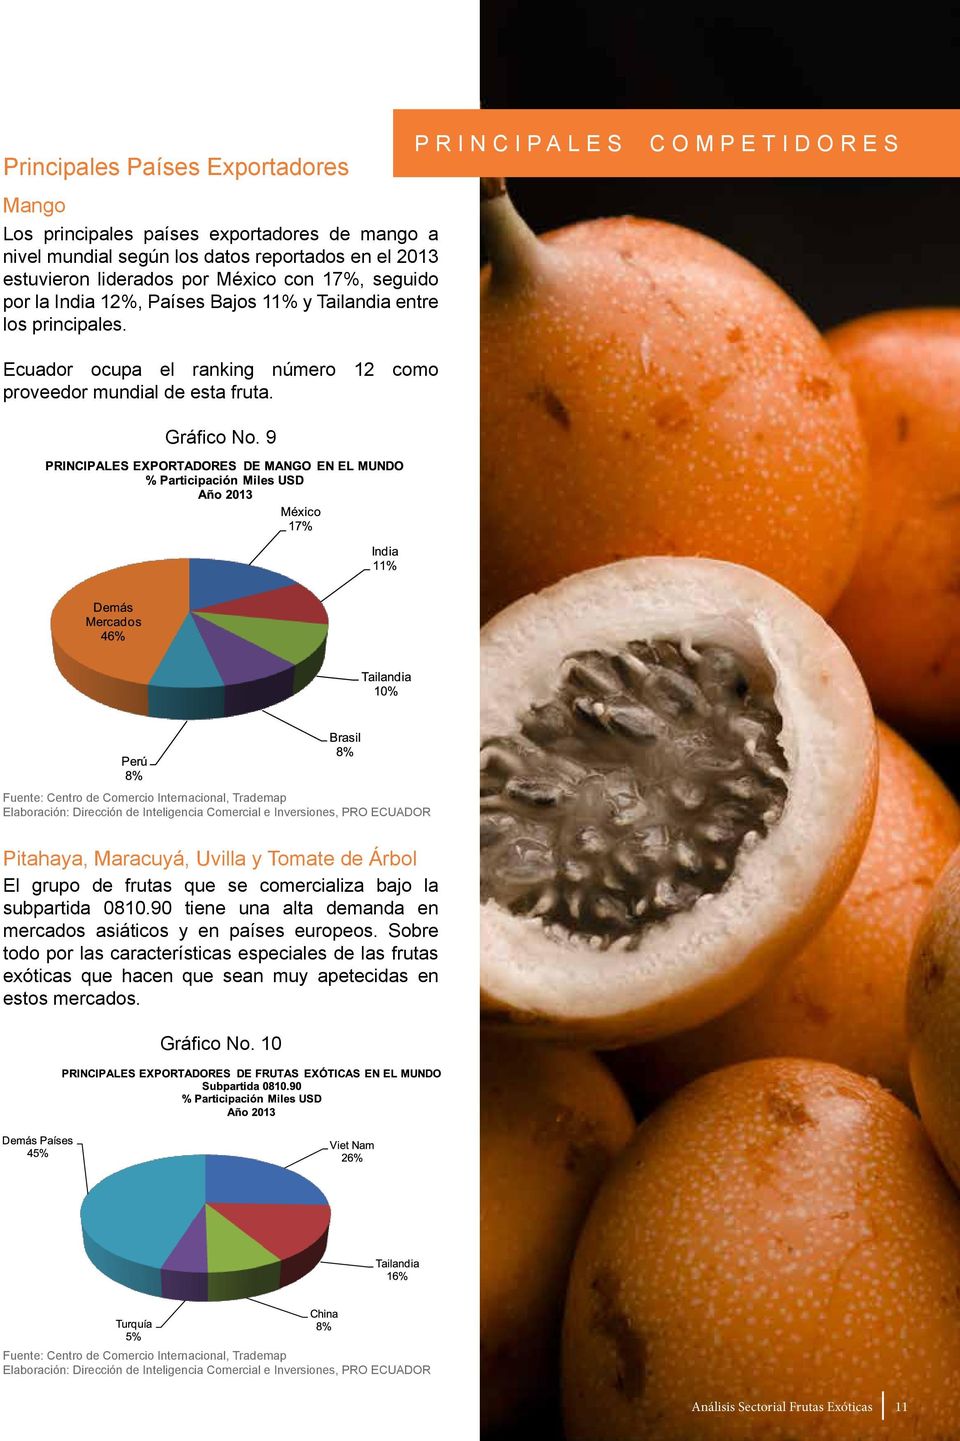 9 PRINCIPALES COMPETIDORES Fuente: Centro de Comercio Internacional, Trademap Pitahaya, Maracuyá, Uvilla y Tomate de Árbol El grupo de frutas que se comercializa bajo la subpartida 0810.